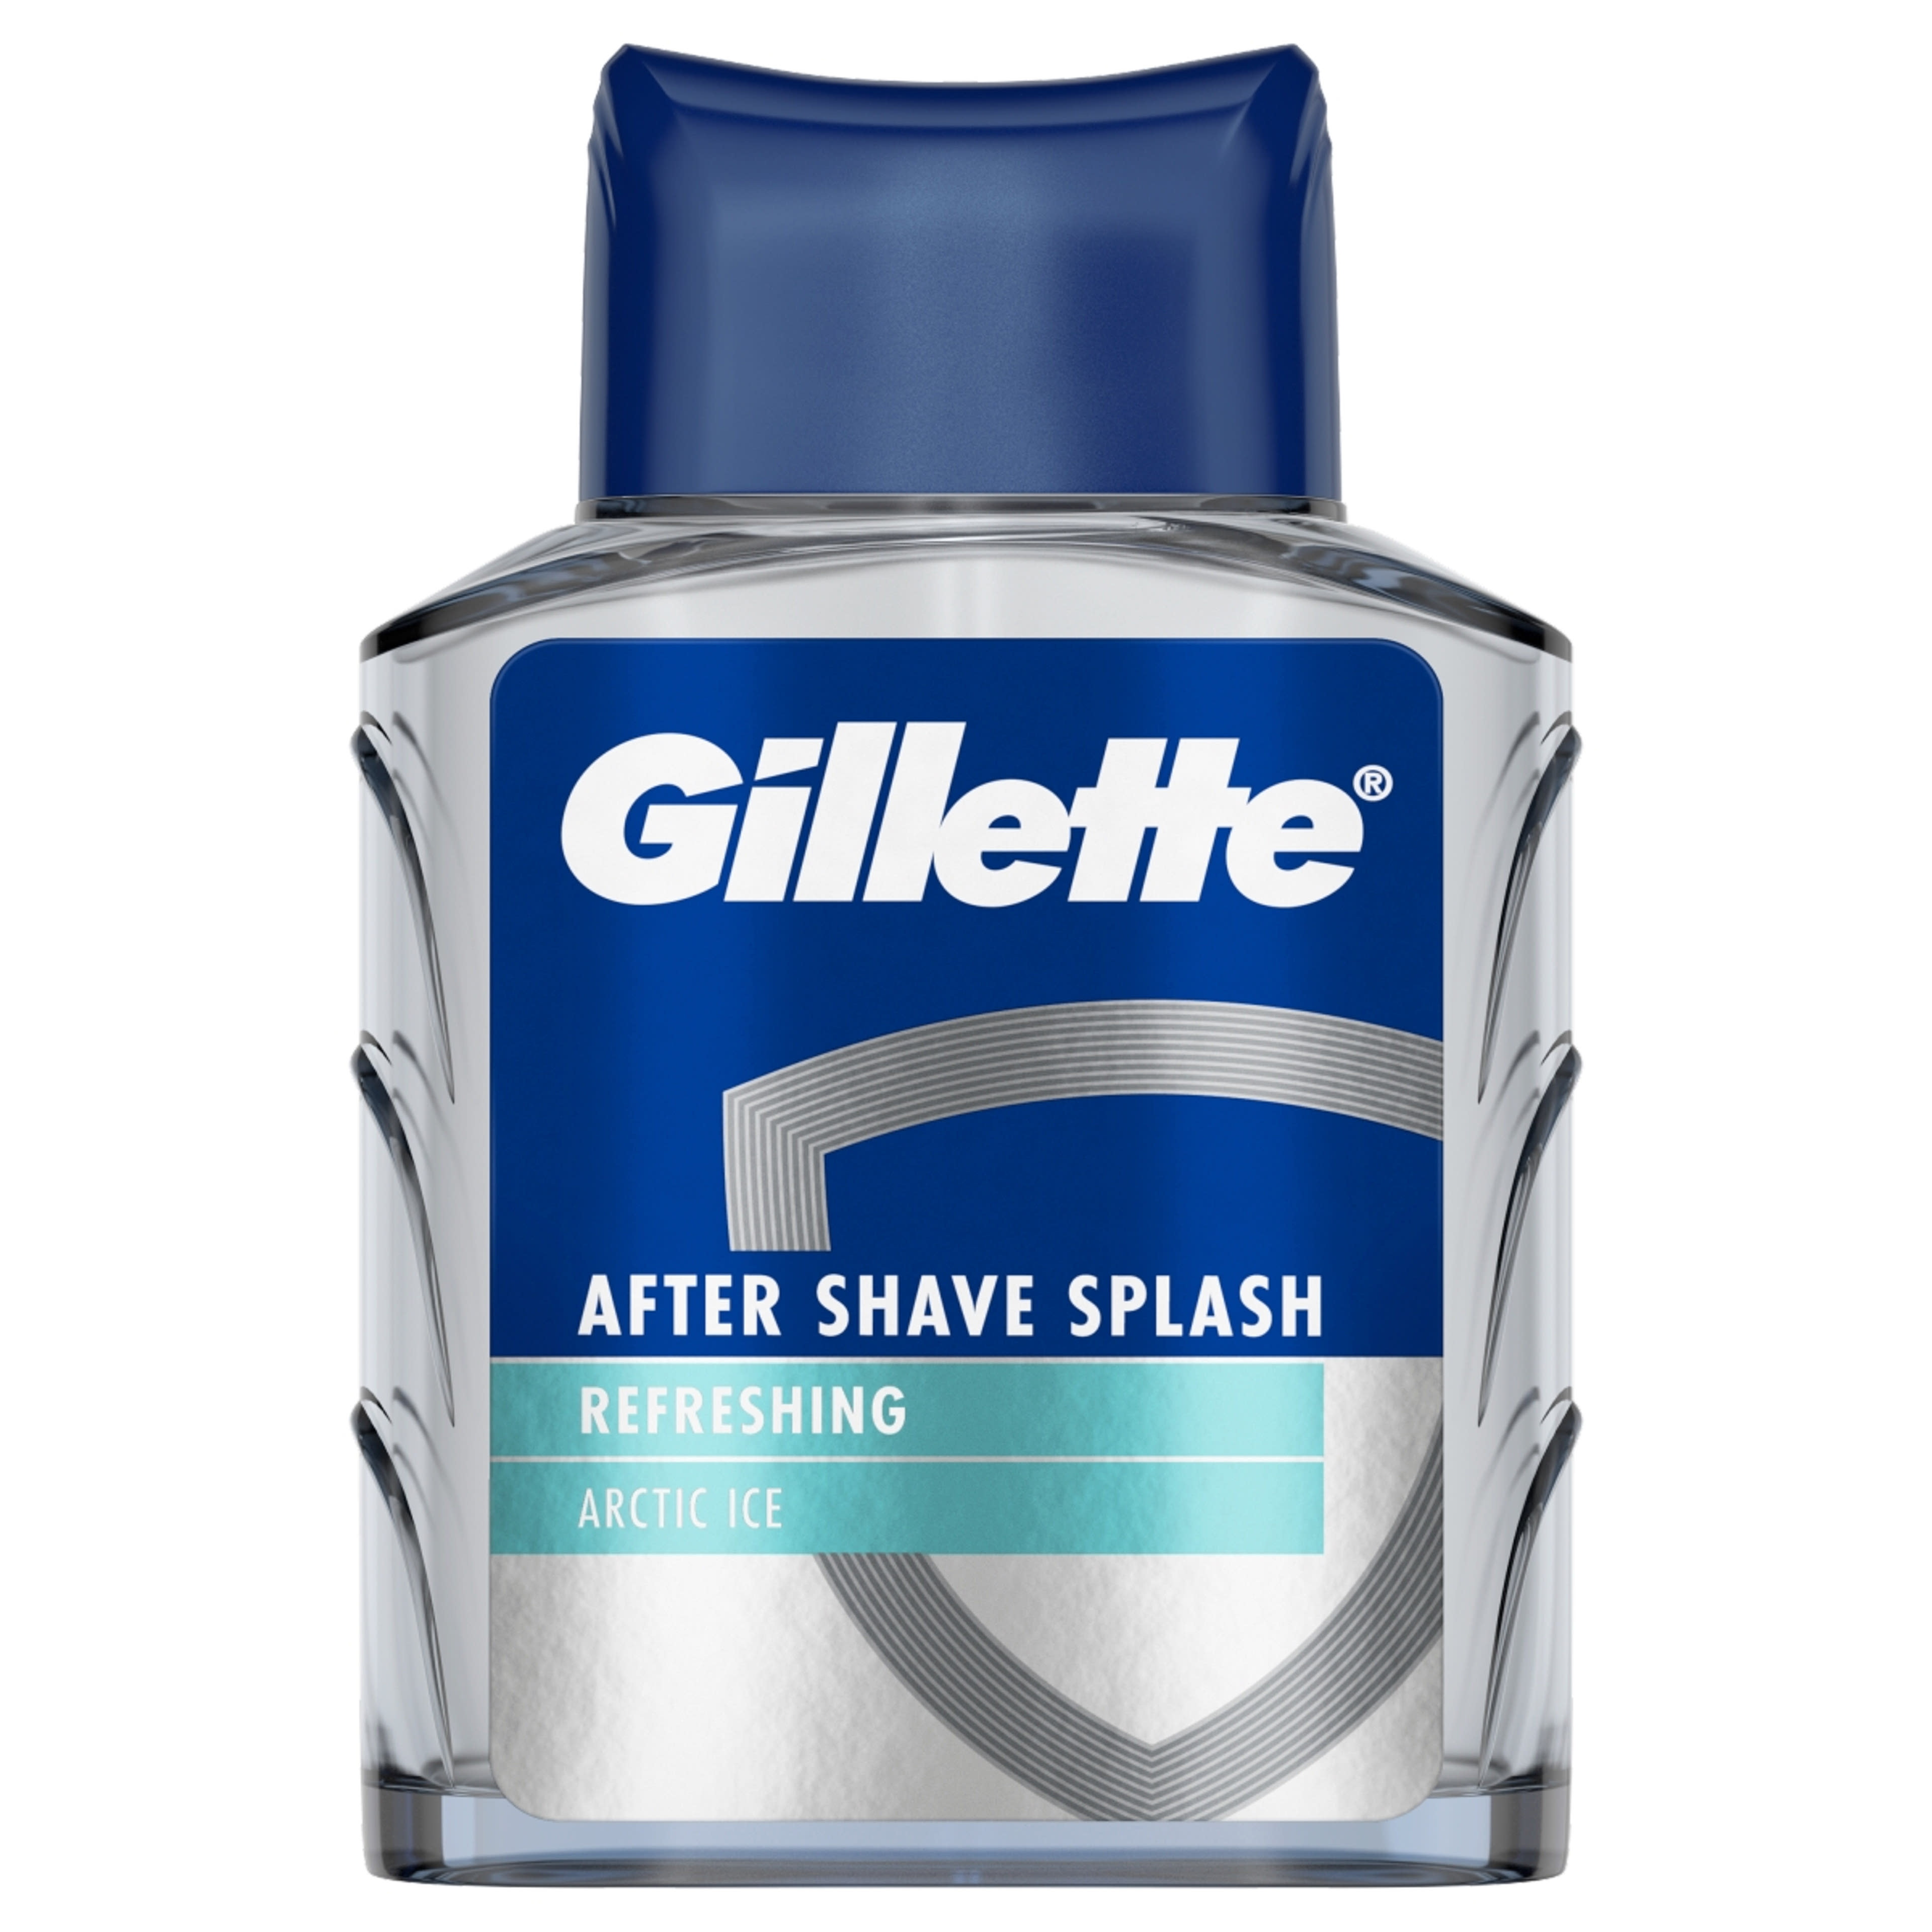 Gillette Series Arctic Ice Bold borotválkozás utáni arcszesz friss illattal - 100 ml-1